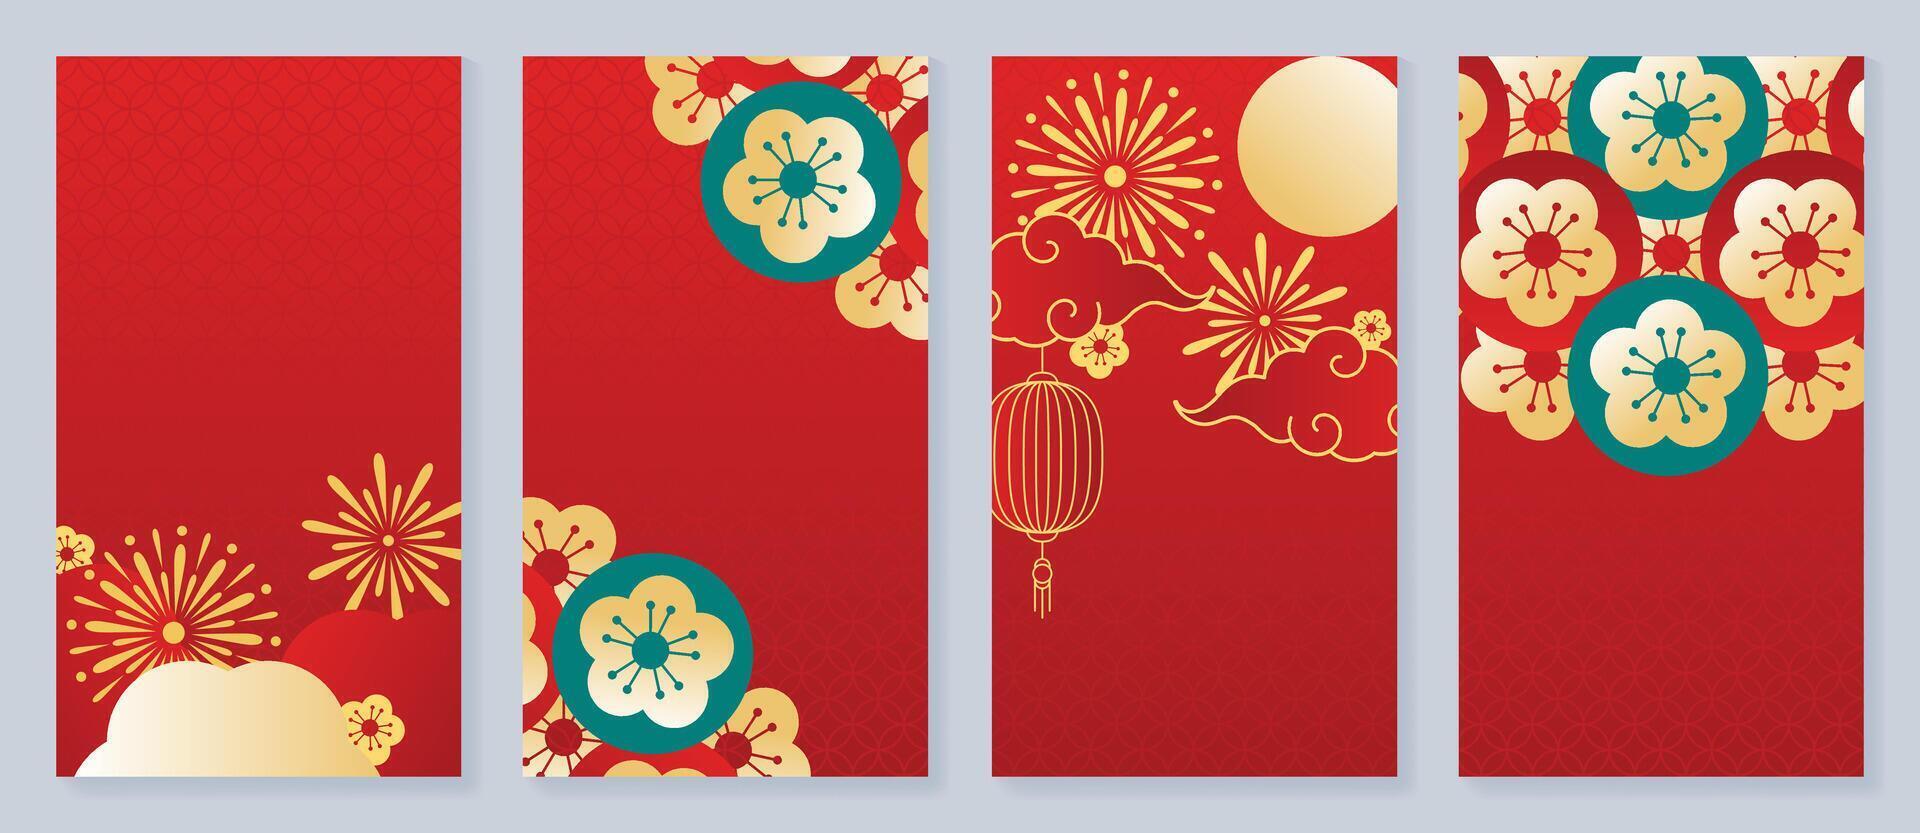 kinesisk ny år omslag bakgrund vektor. lyx bakgrund design med kinesisk mönster, fyrverkeri, blomma, lykta, måne, moln. modern orientalisk illustration för omslag, baner, hemsida, social media. vektor